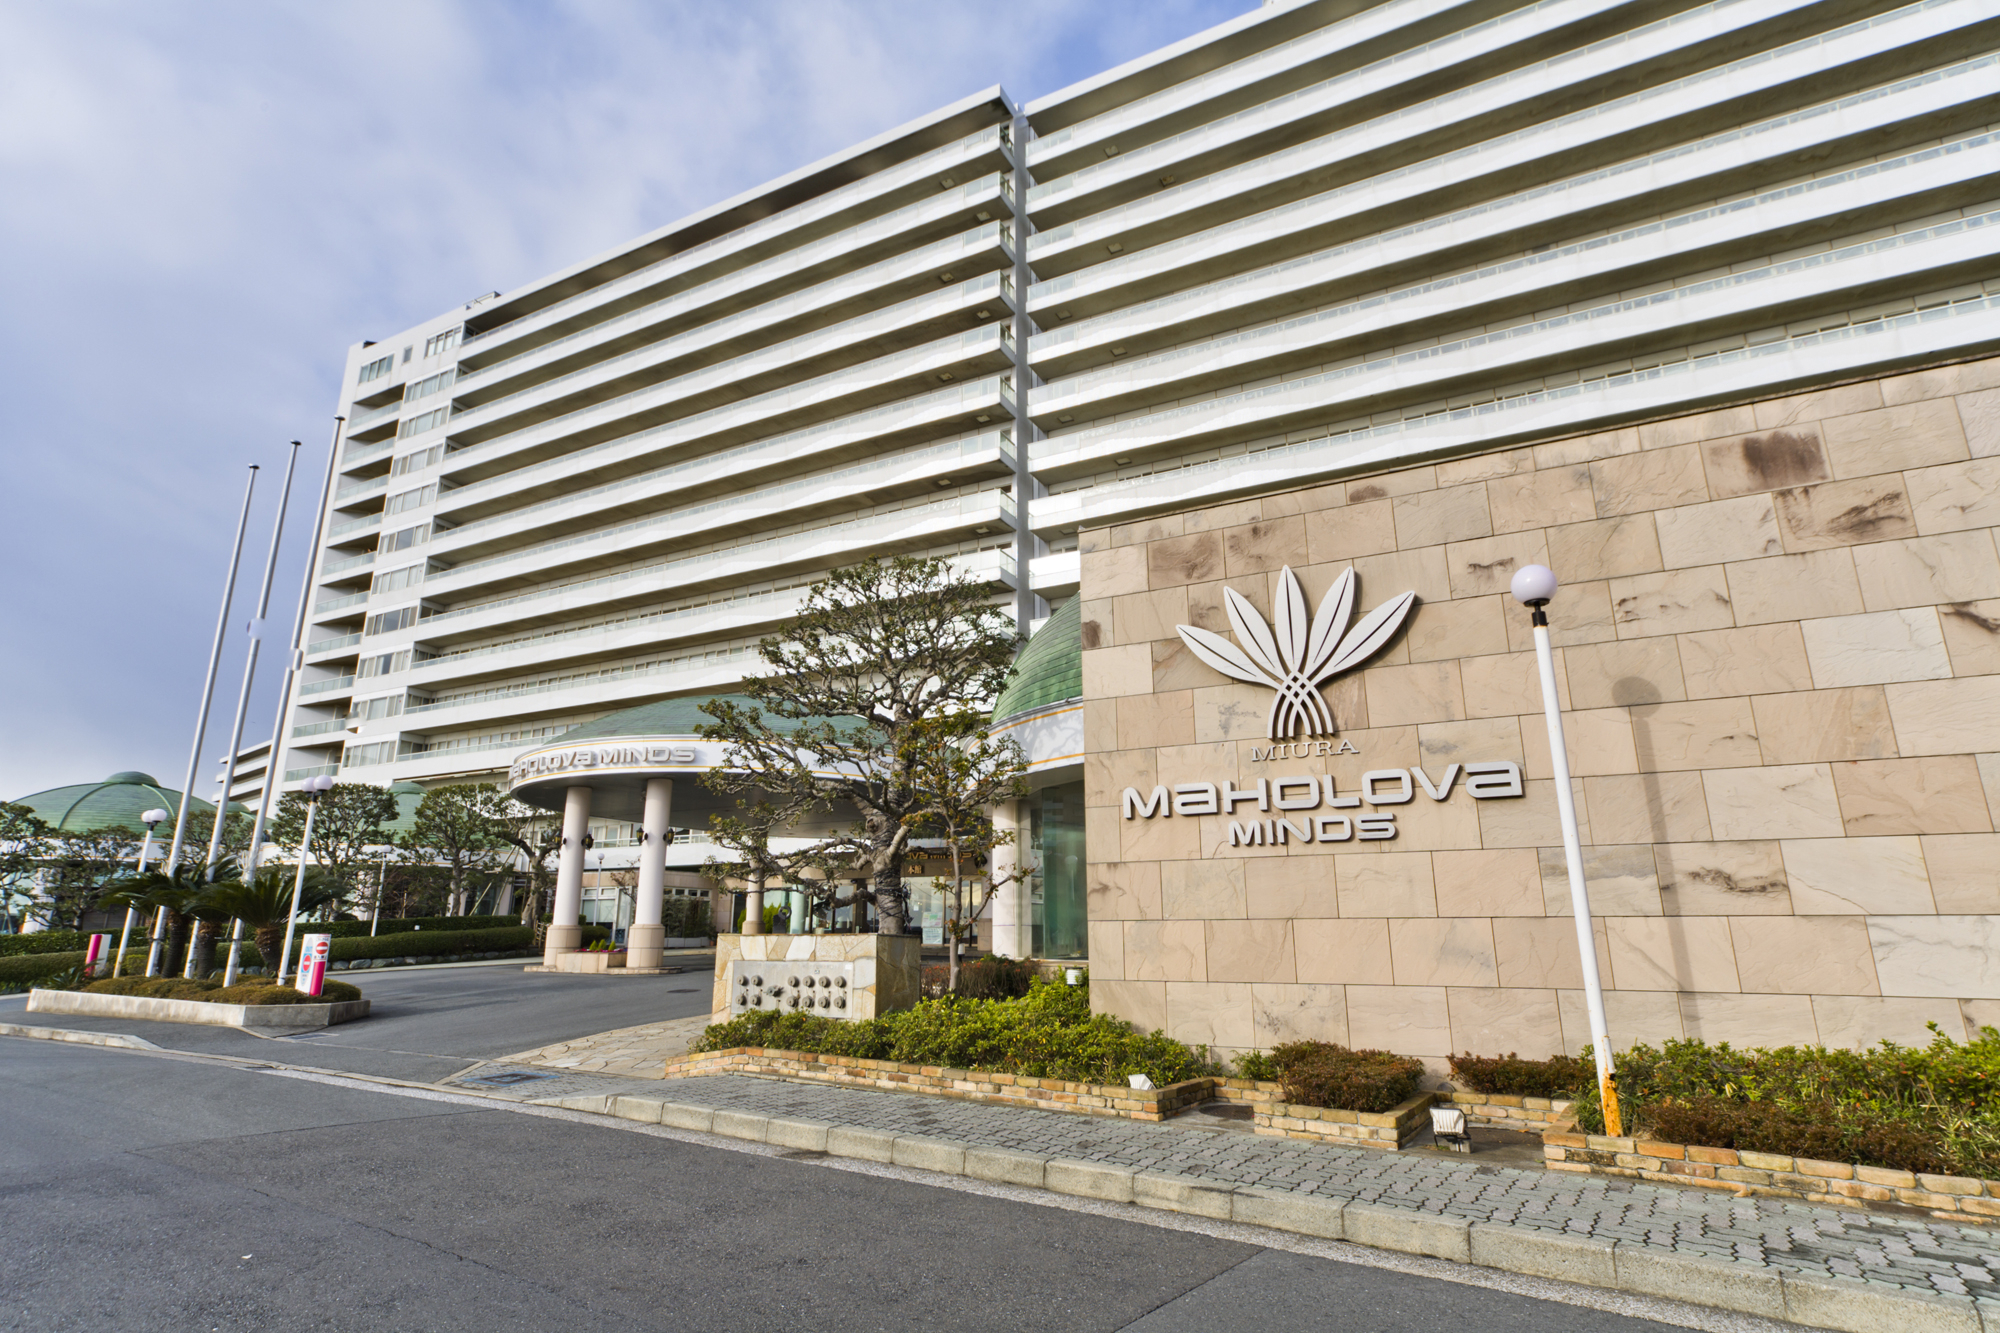 神奈川の温泉リゾートホテル マホロバ マインズ三浦 が増税後も1年間宿泊料金の据え置きを決定 ホテルマホロバマインズ三浦のプレスリリース